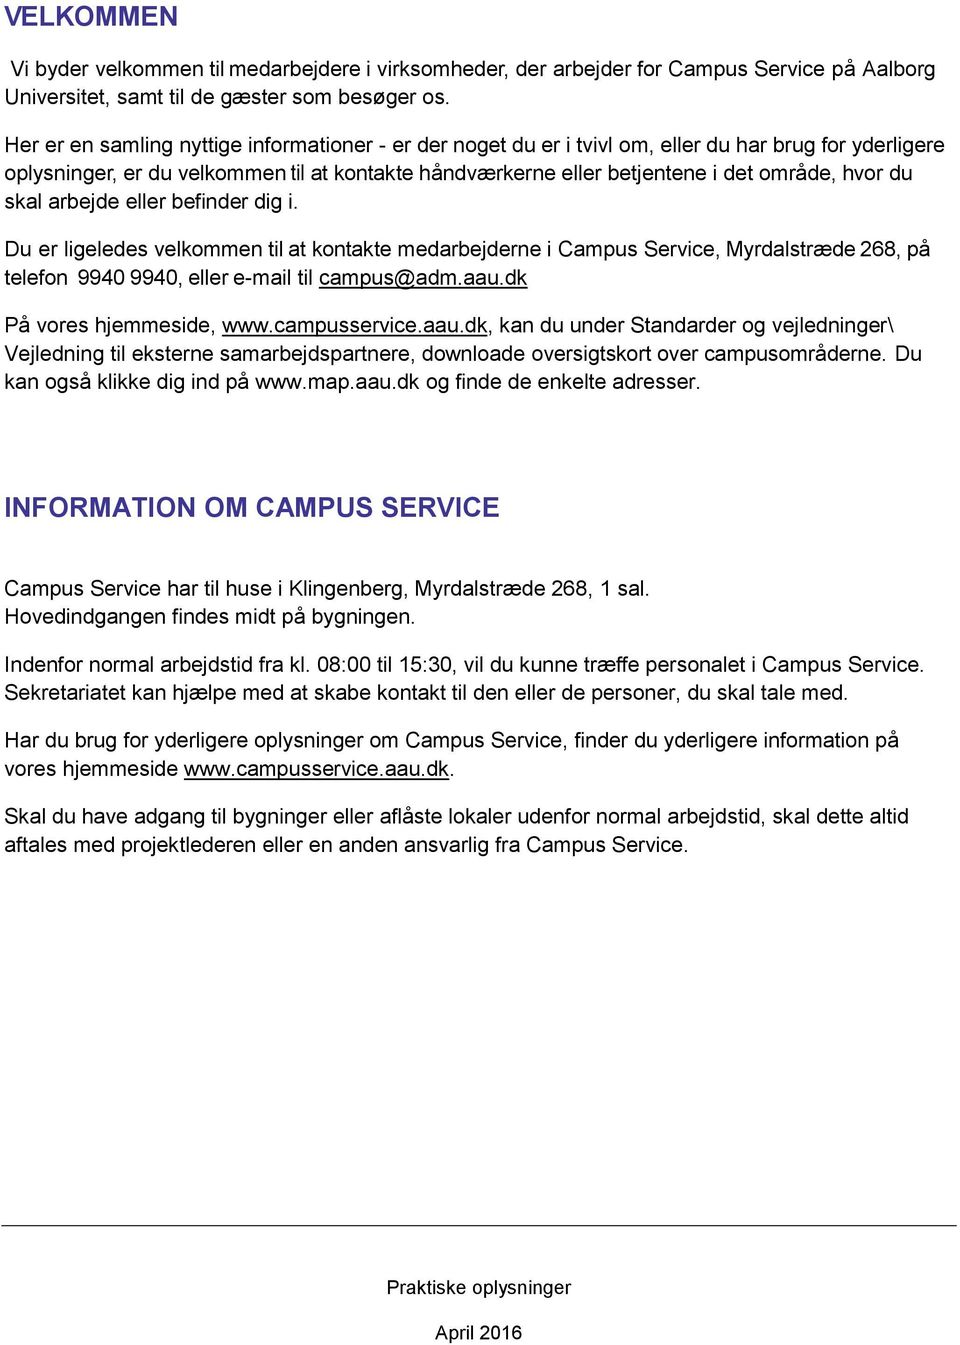 du skal arbejde eller befinder dig i. Du er ligeledes velkommen til at kontakte medarbejderne i Campus Service, Myrdalstræde 268, på telefon 9940 9940, eller e-mail til campus@adm.aau.